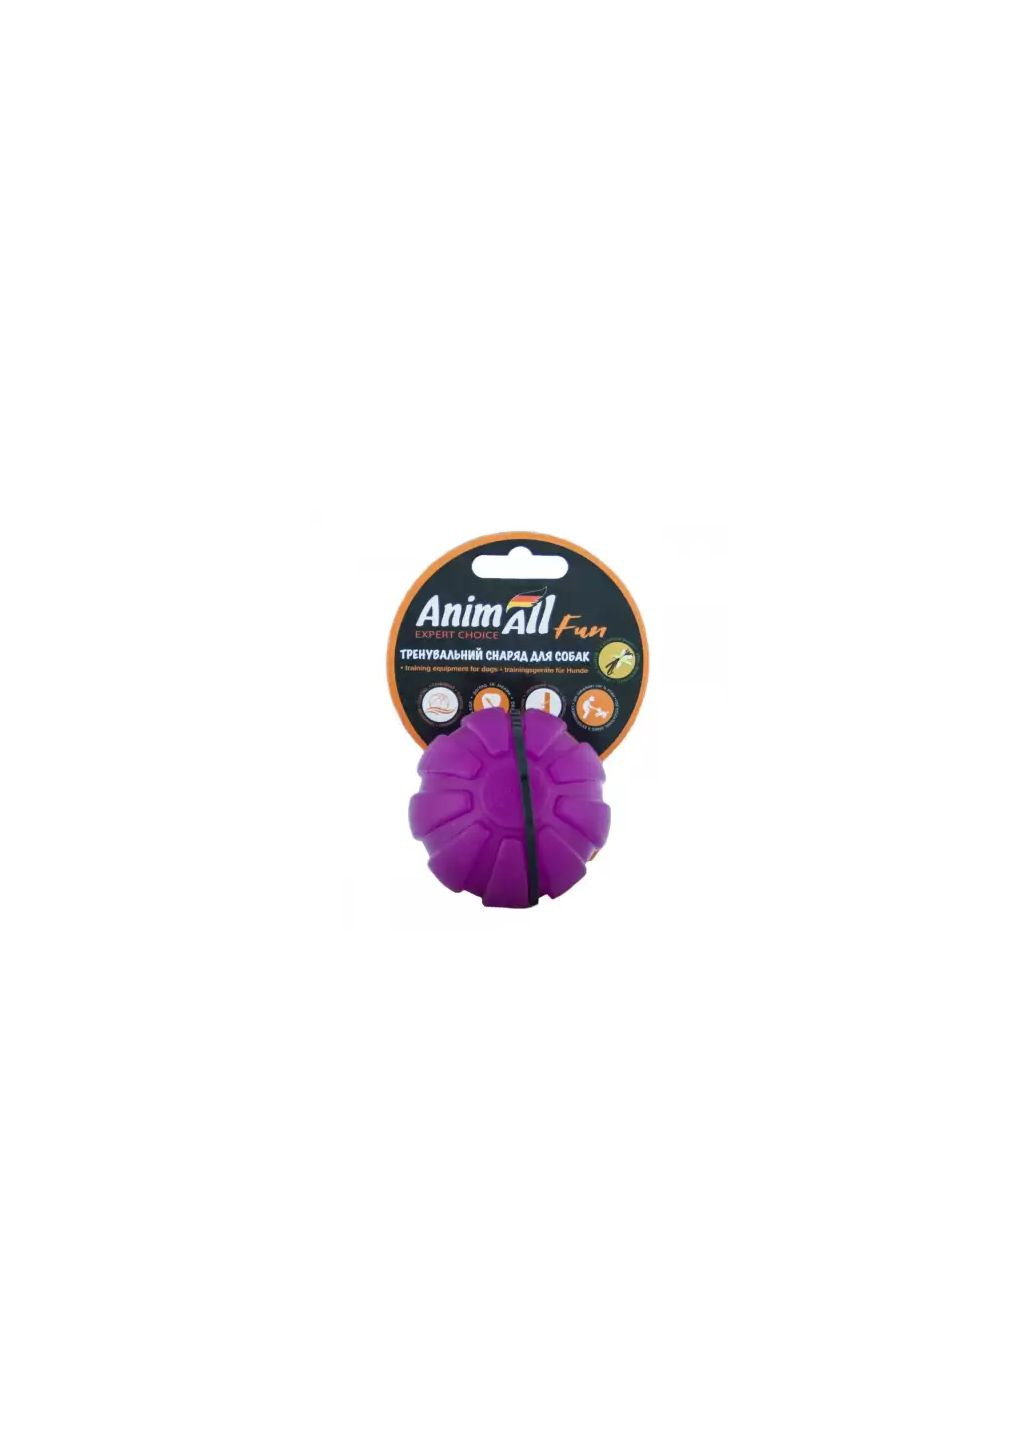 Игрушка Fun тренировочный мяч, фиолетовый, 7 см AnimAll (278309054)